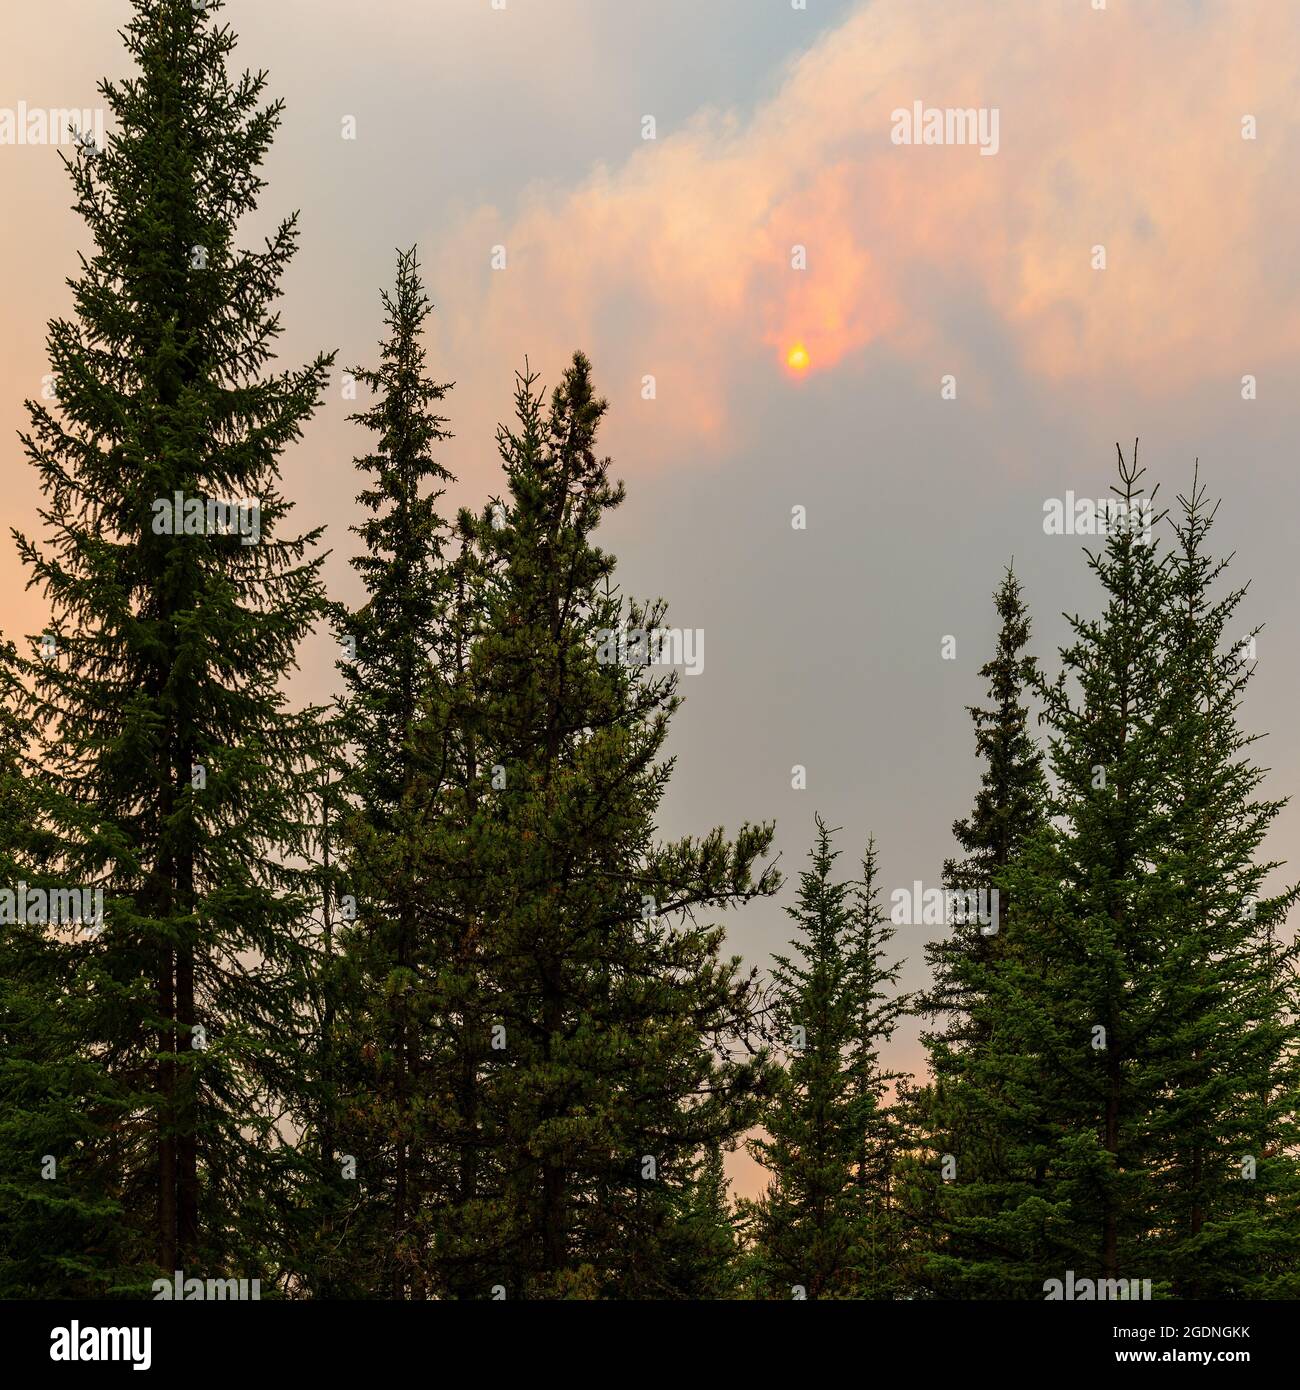 Incendios forestales inferno en los bosques de pinos de Columbia Británica, Canadá. Concepto de incendios forestales y cambio climático. Foto de stock